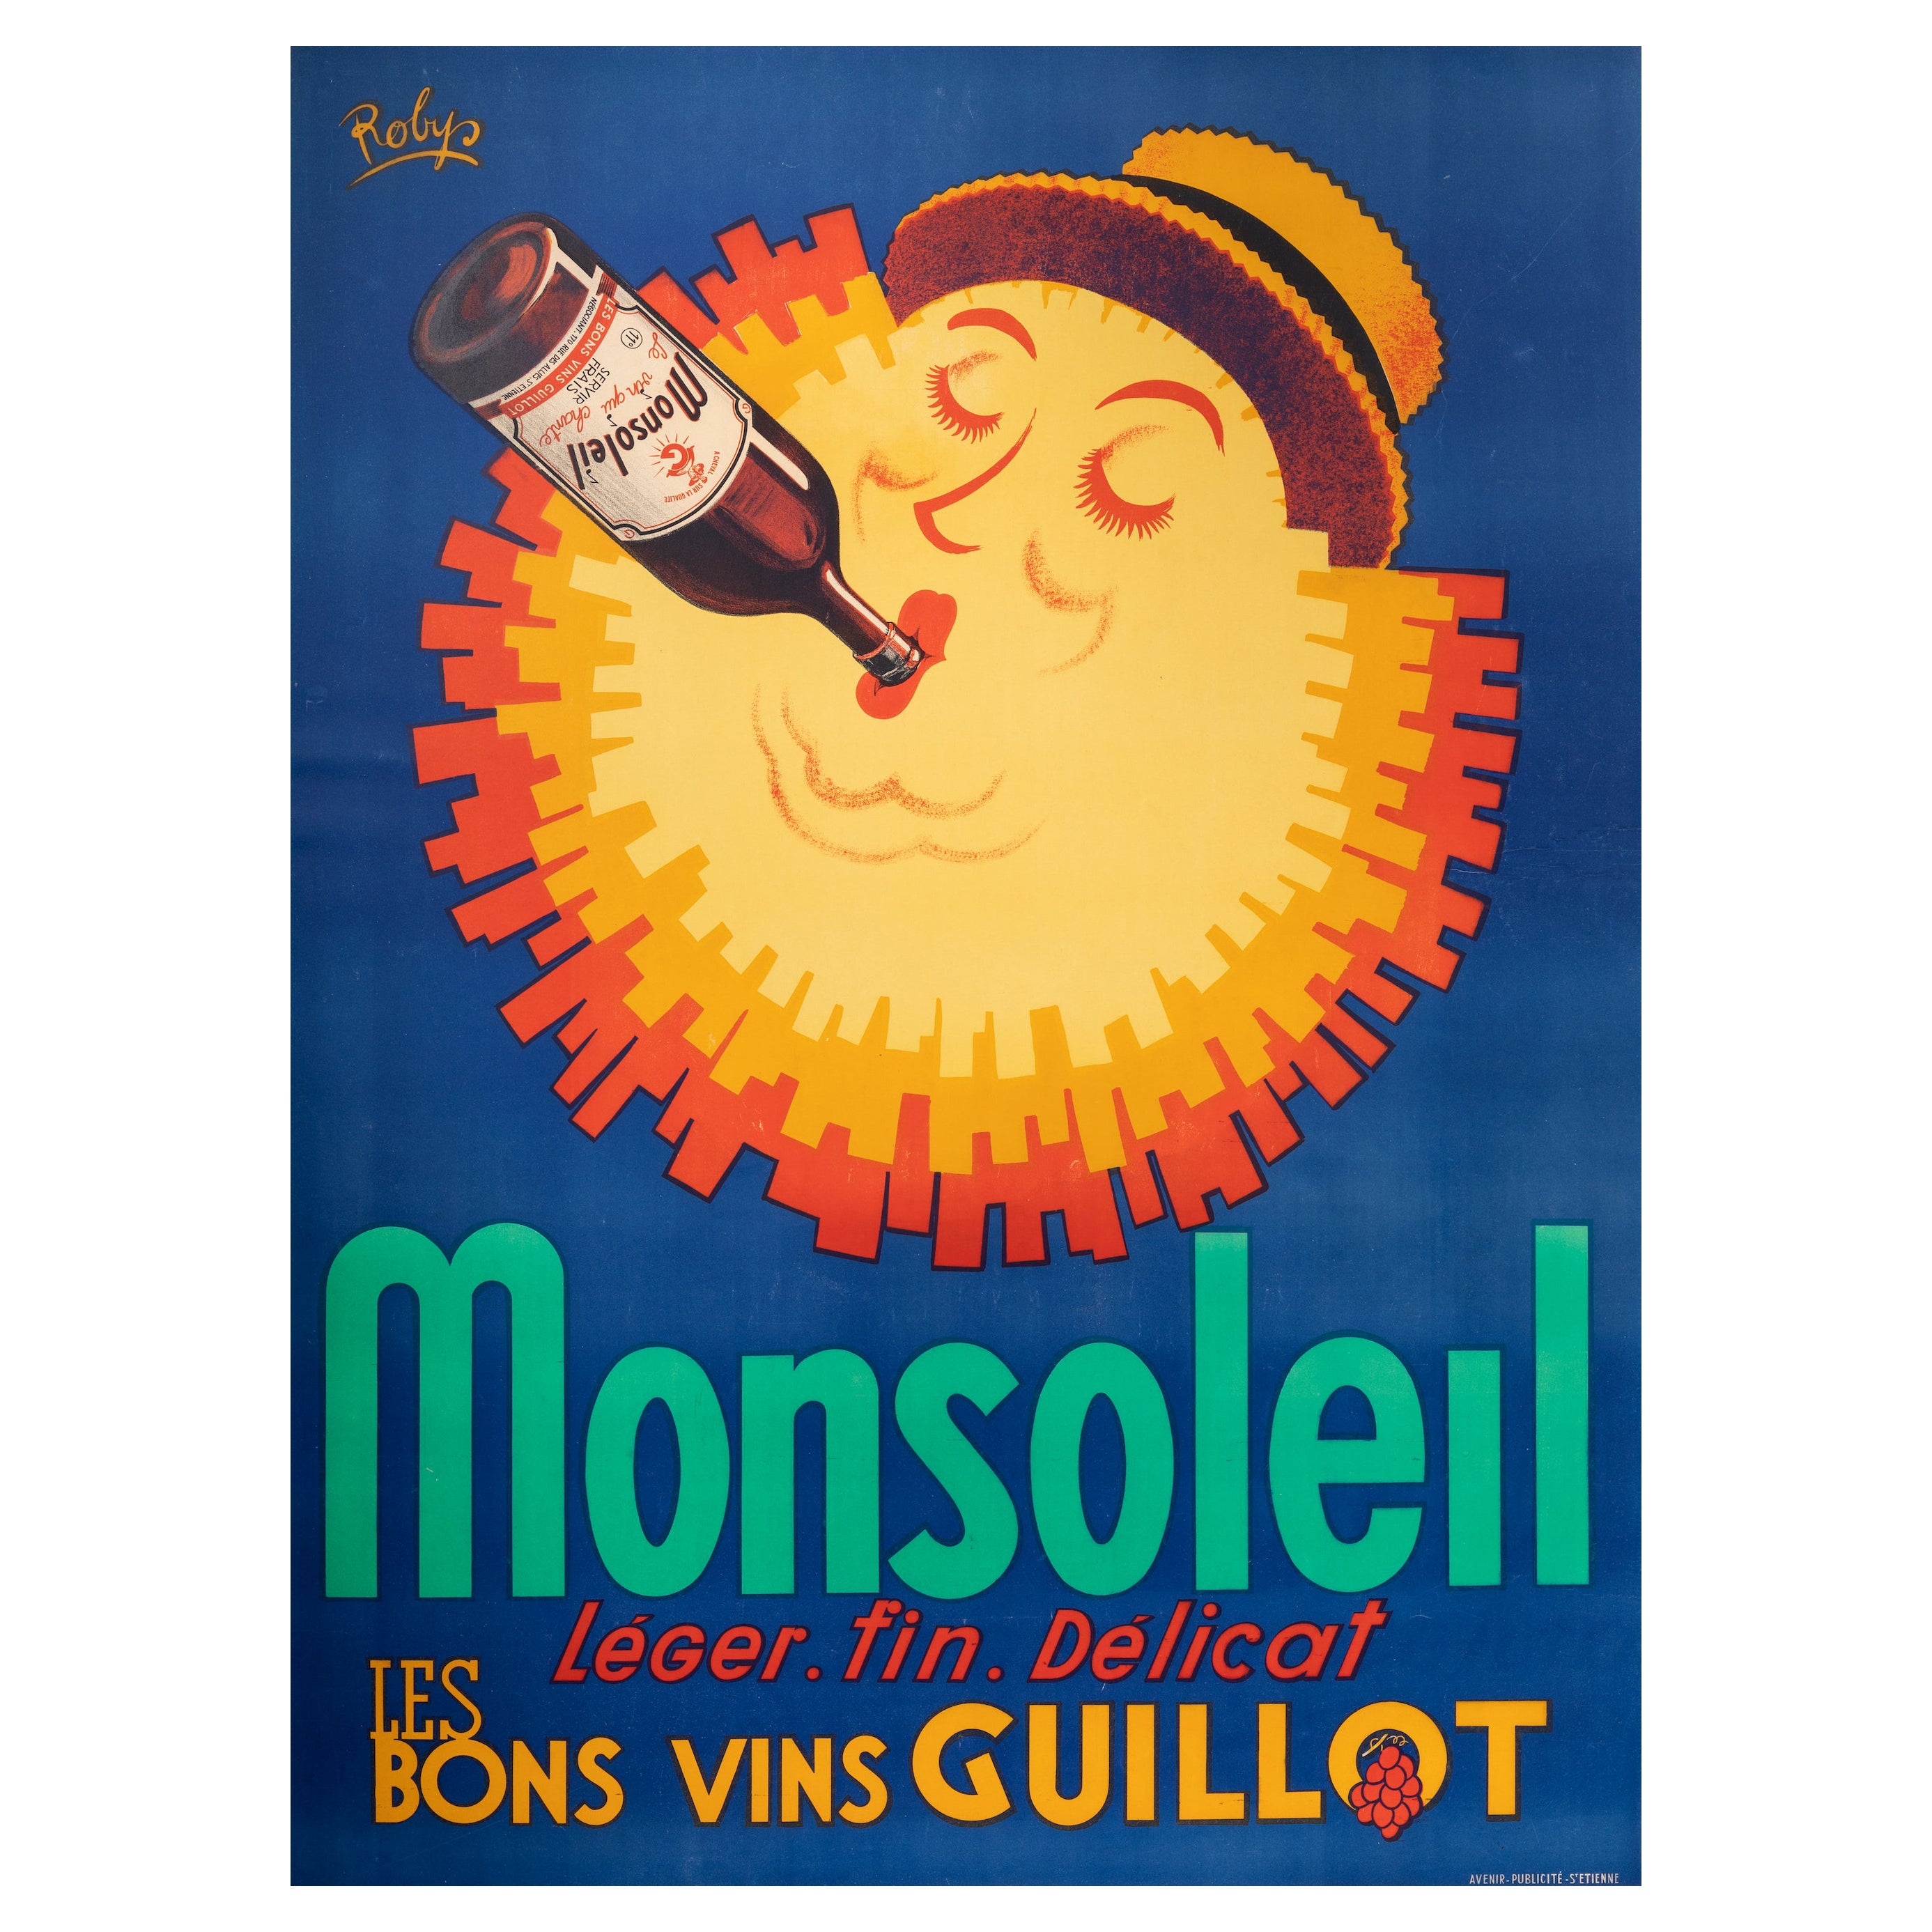 Affiche originale de vin vintage Robys, Monsoleil, vin, raisin, chapeau, soleil, 1940